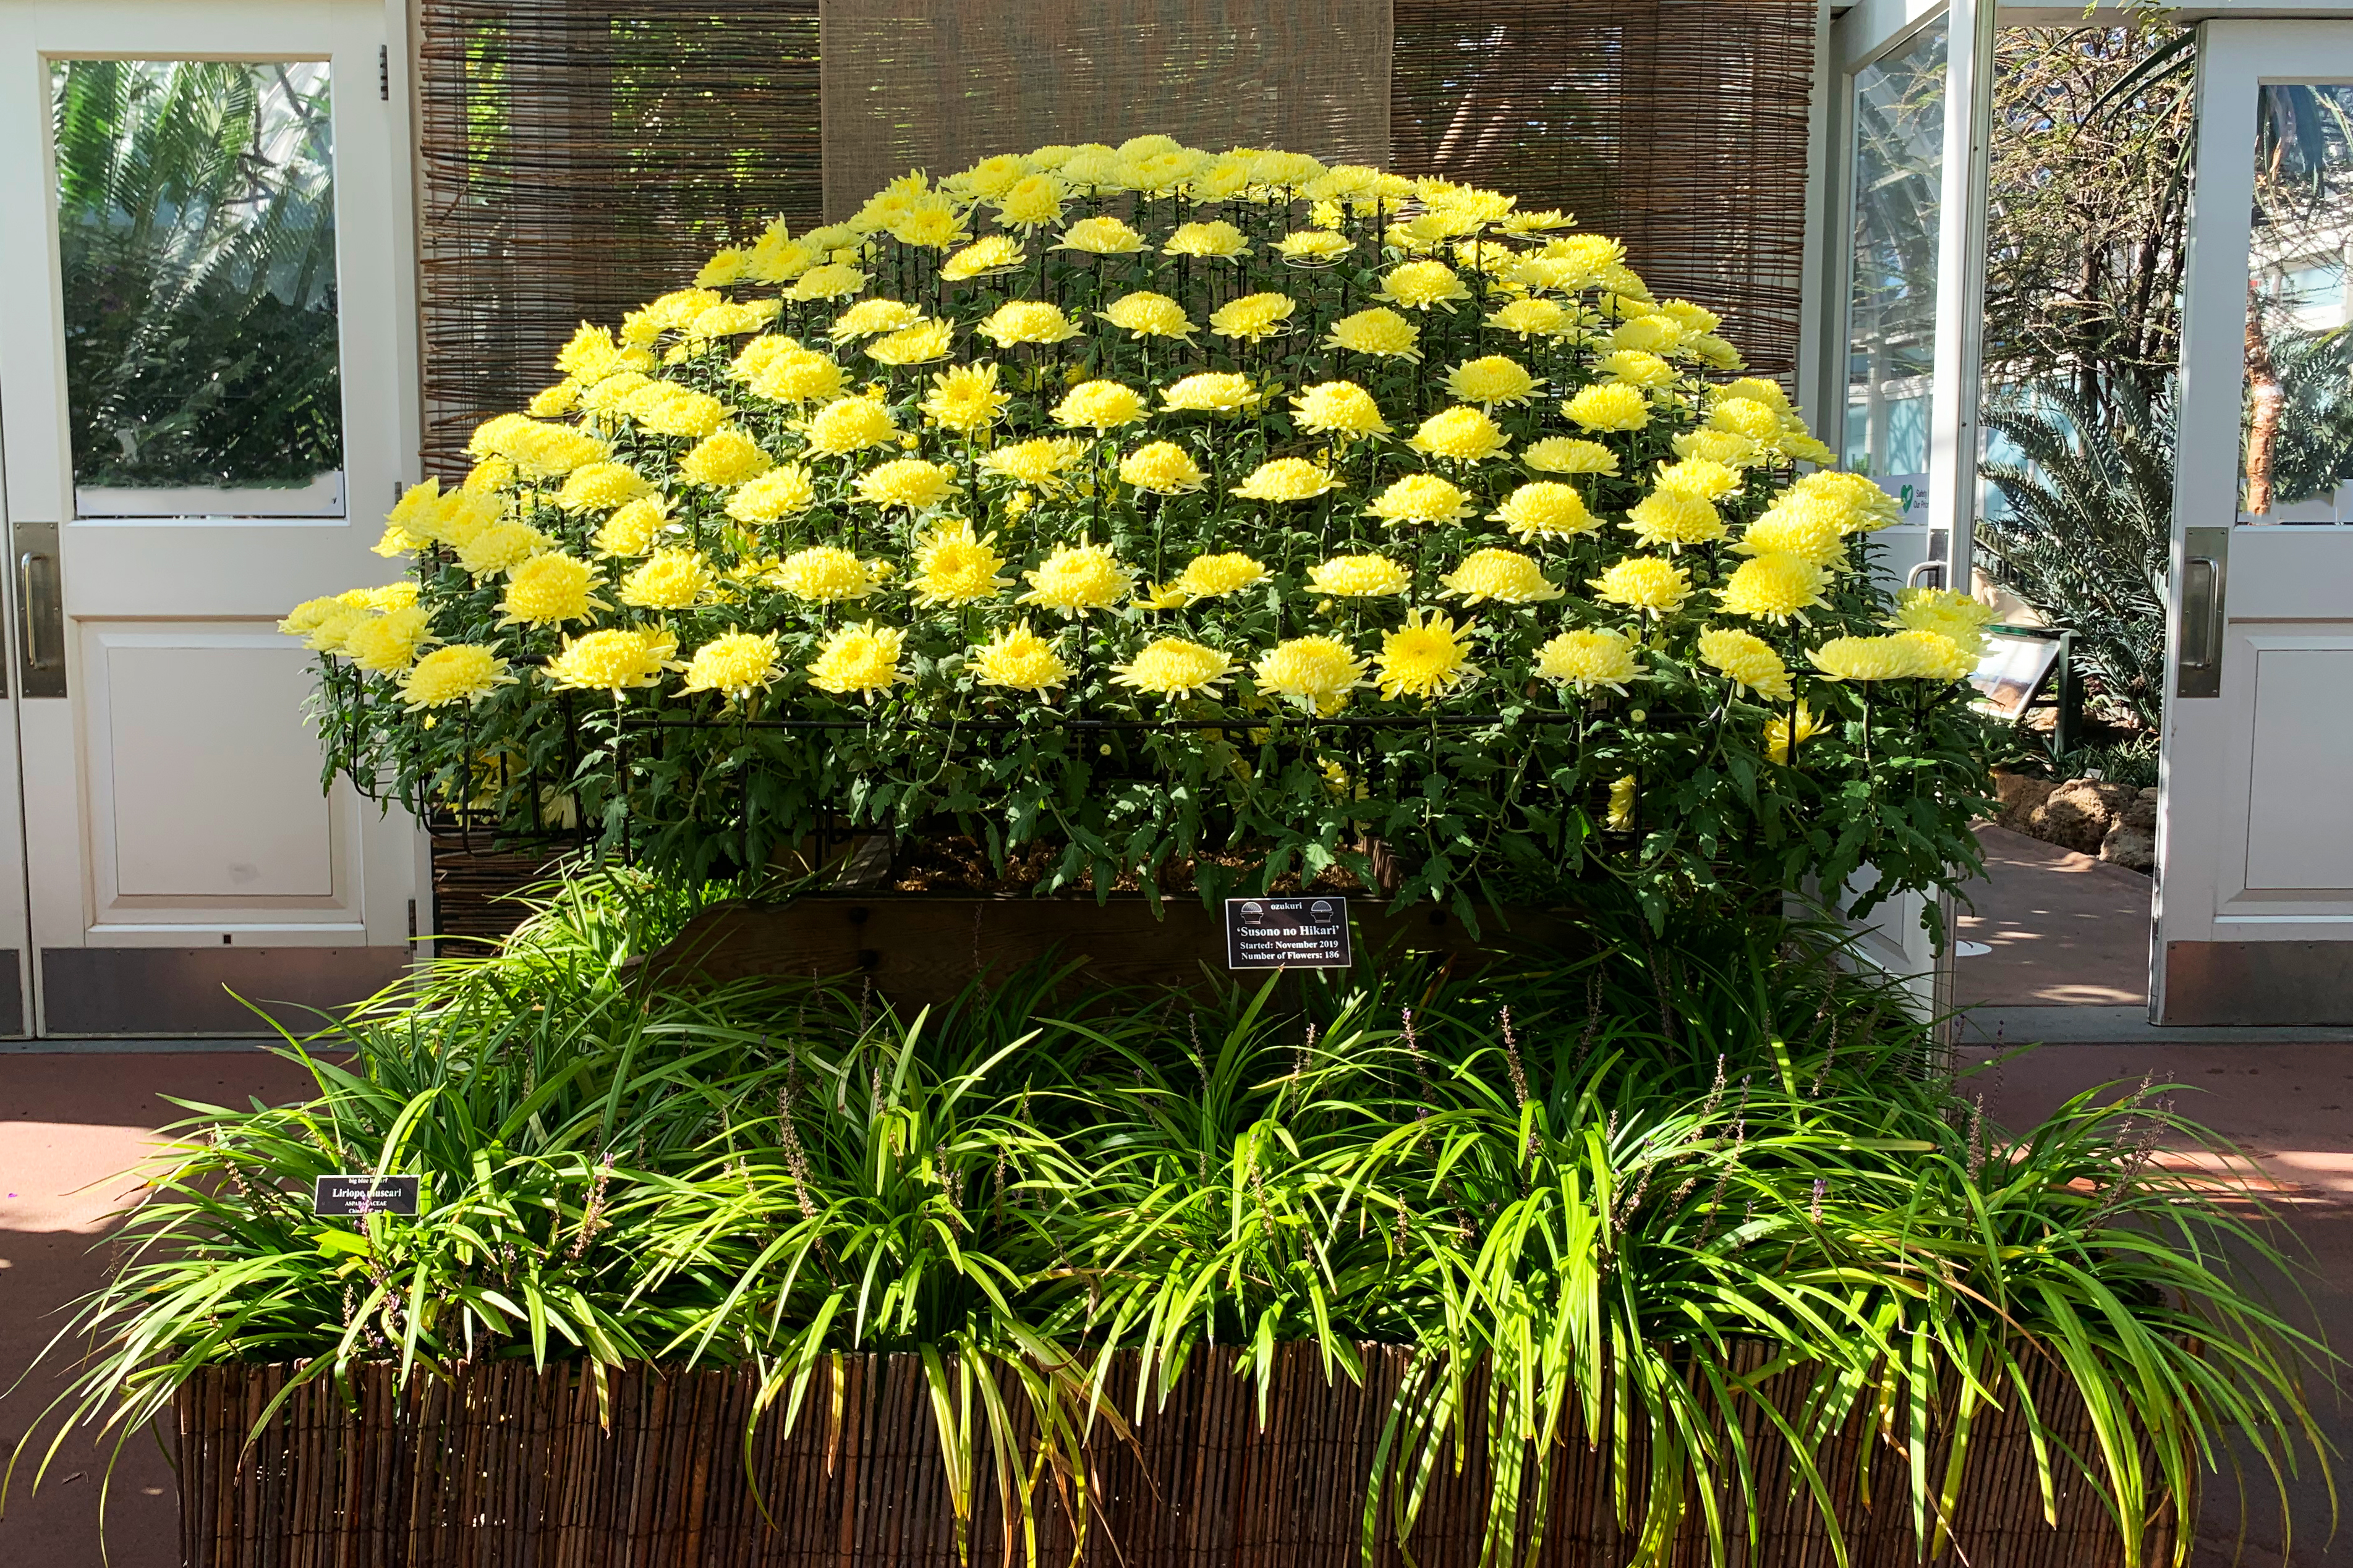 New York Botanical Garden fall kiku chrysanthemum display 